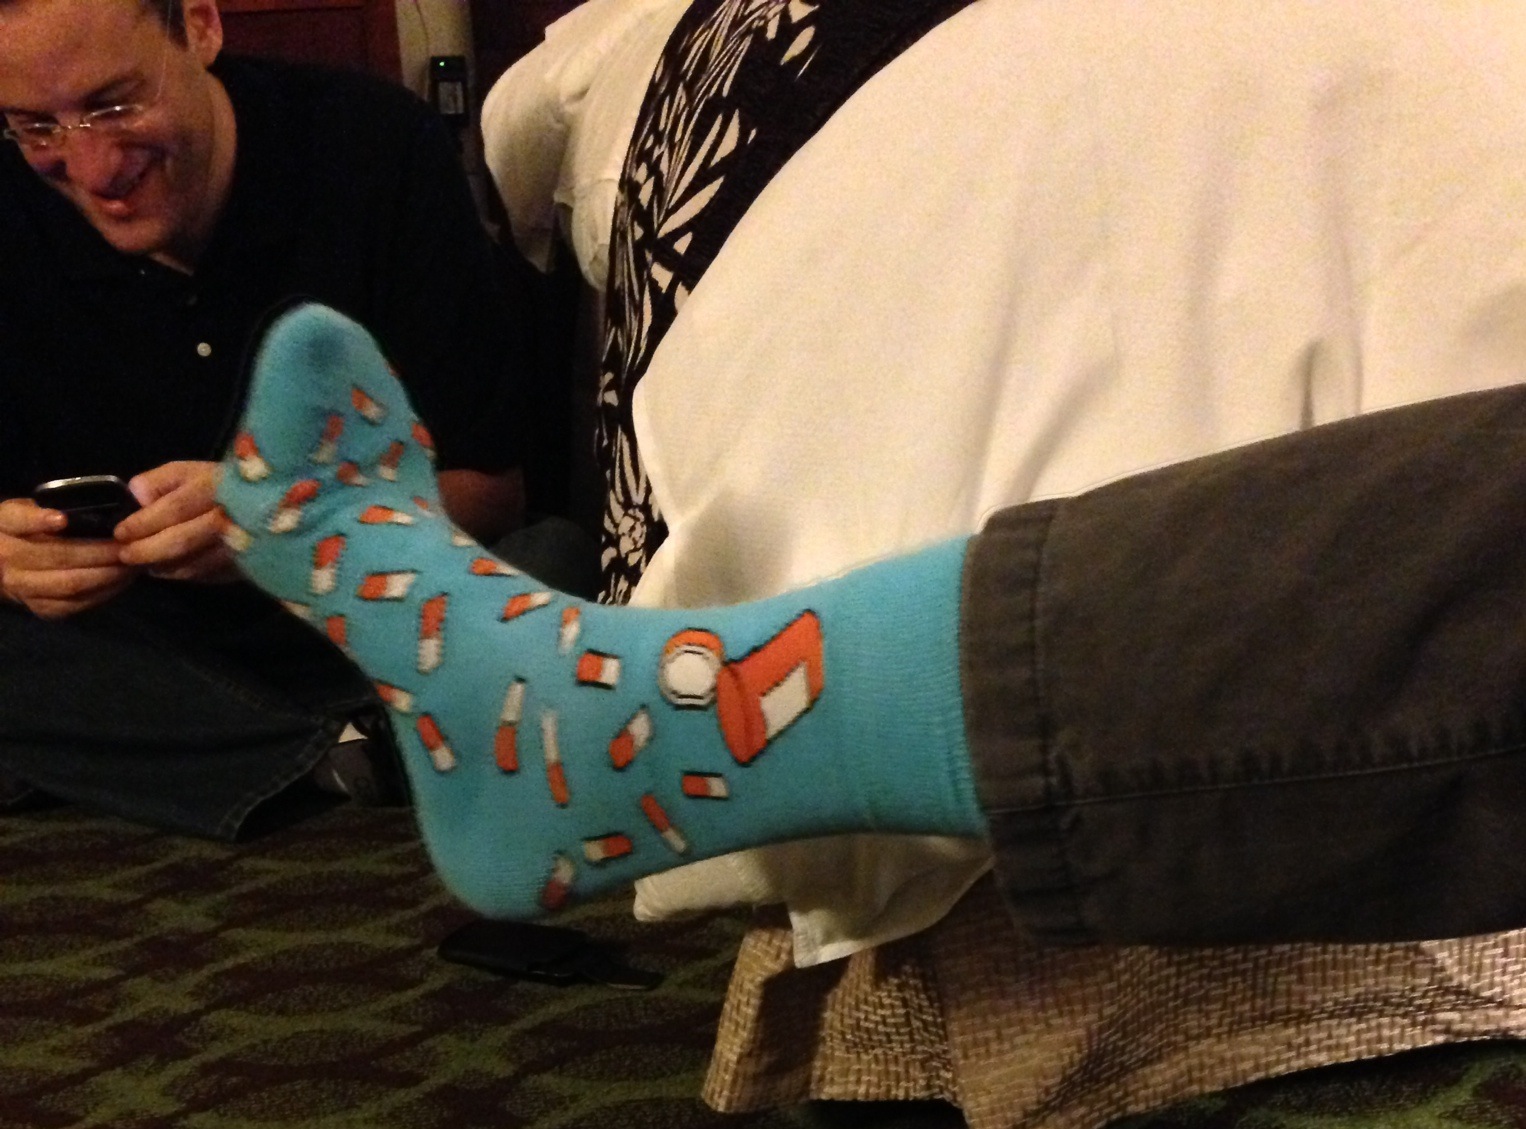 socks and me tweeting2